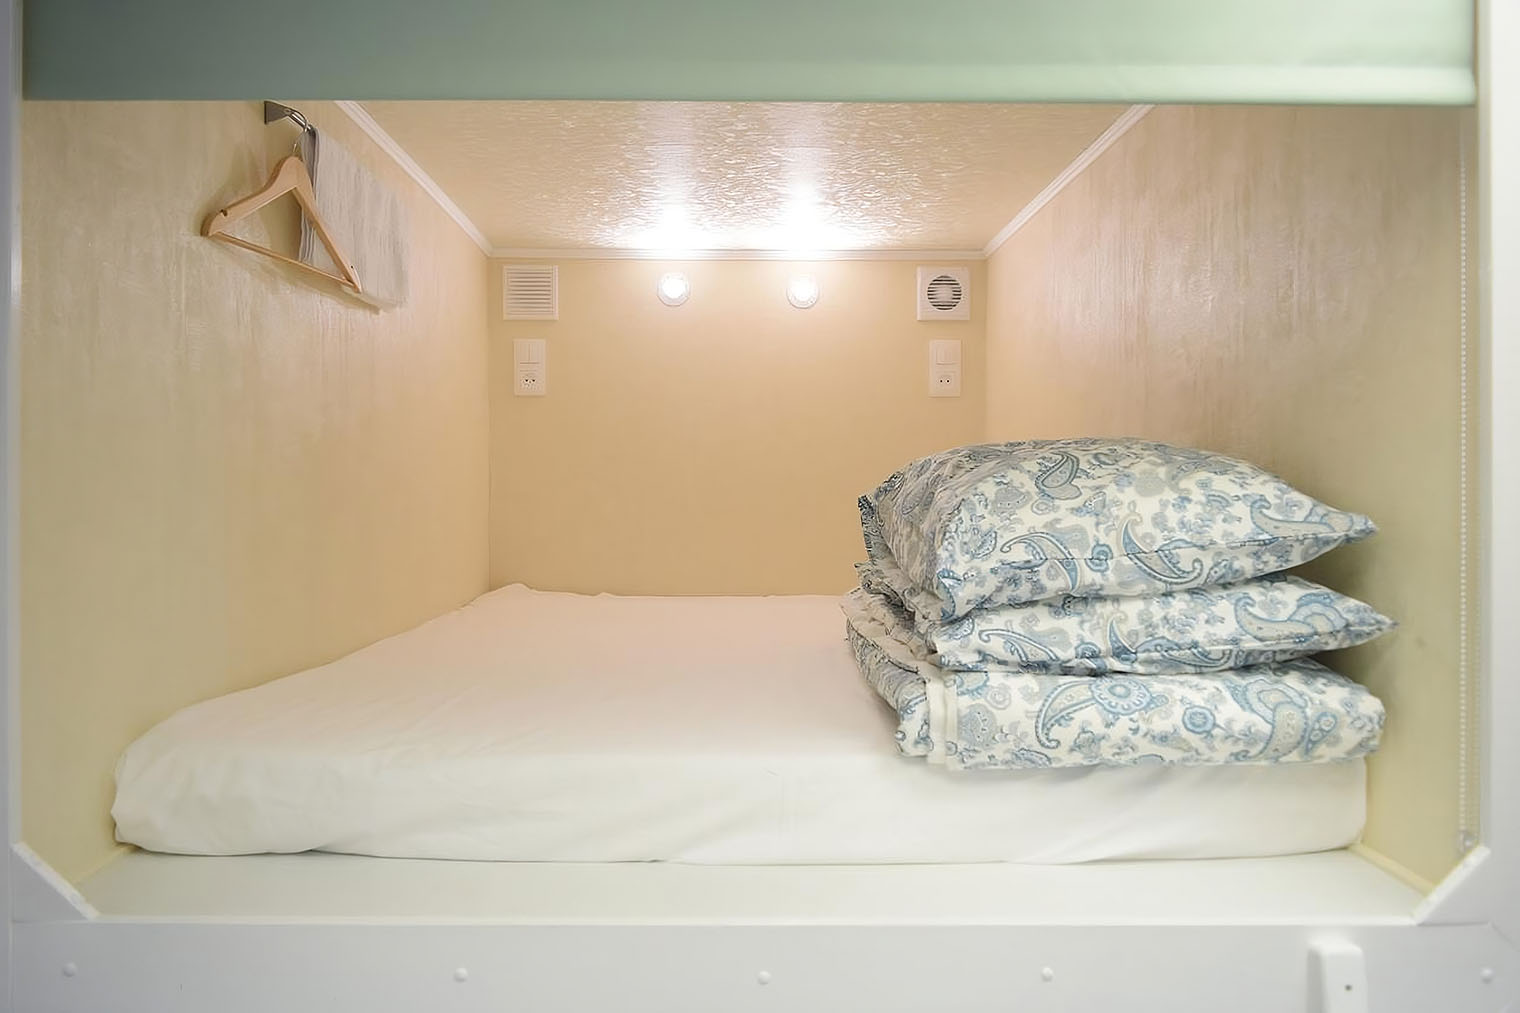 Так выглядит спальное место в хостеле Capsule Arbat 25. Источник: tinkoff.ru